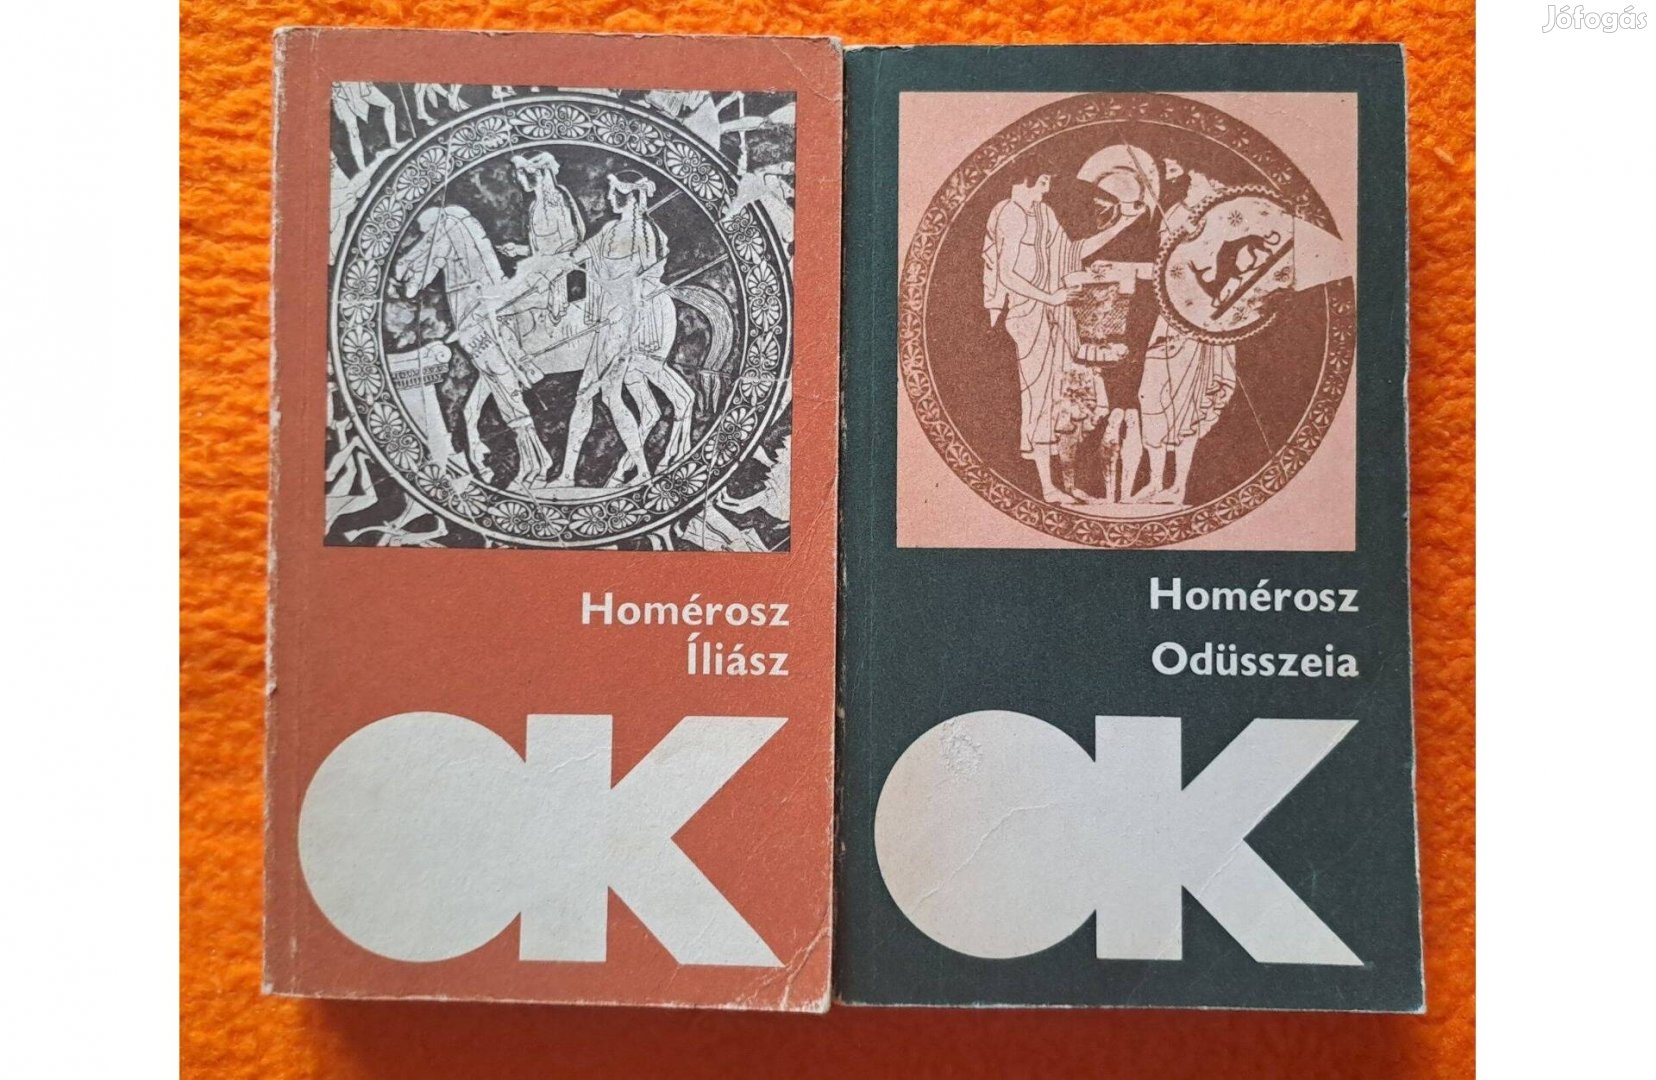 Homérosz: Íliász és Odüsszeia - 2 db könyv együtt csak 400 Ft